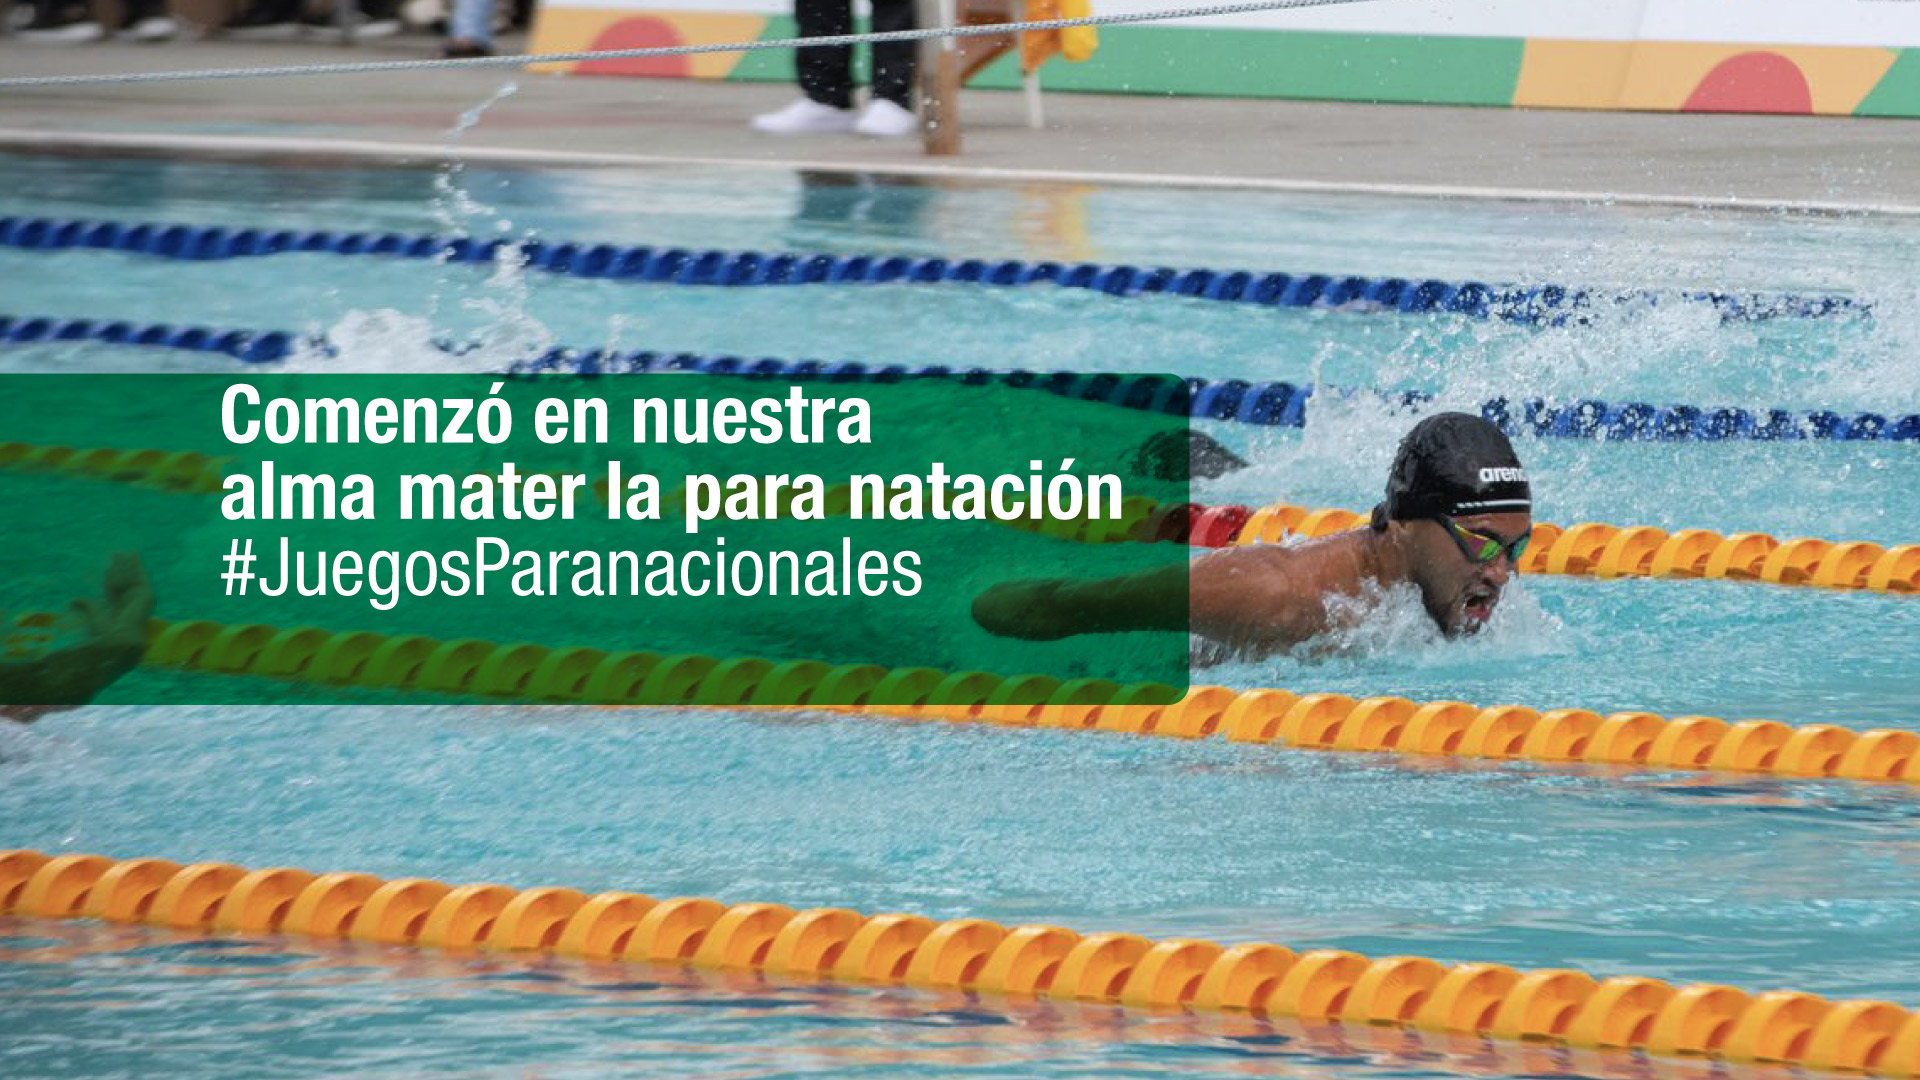 243 para-nadadores compiten desde hoy en nuestra alma mater #JuegosParanacionales